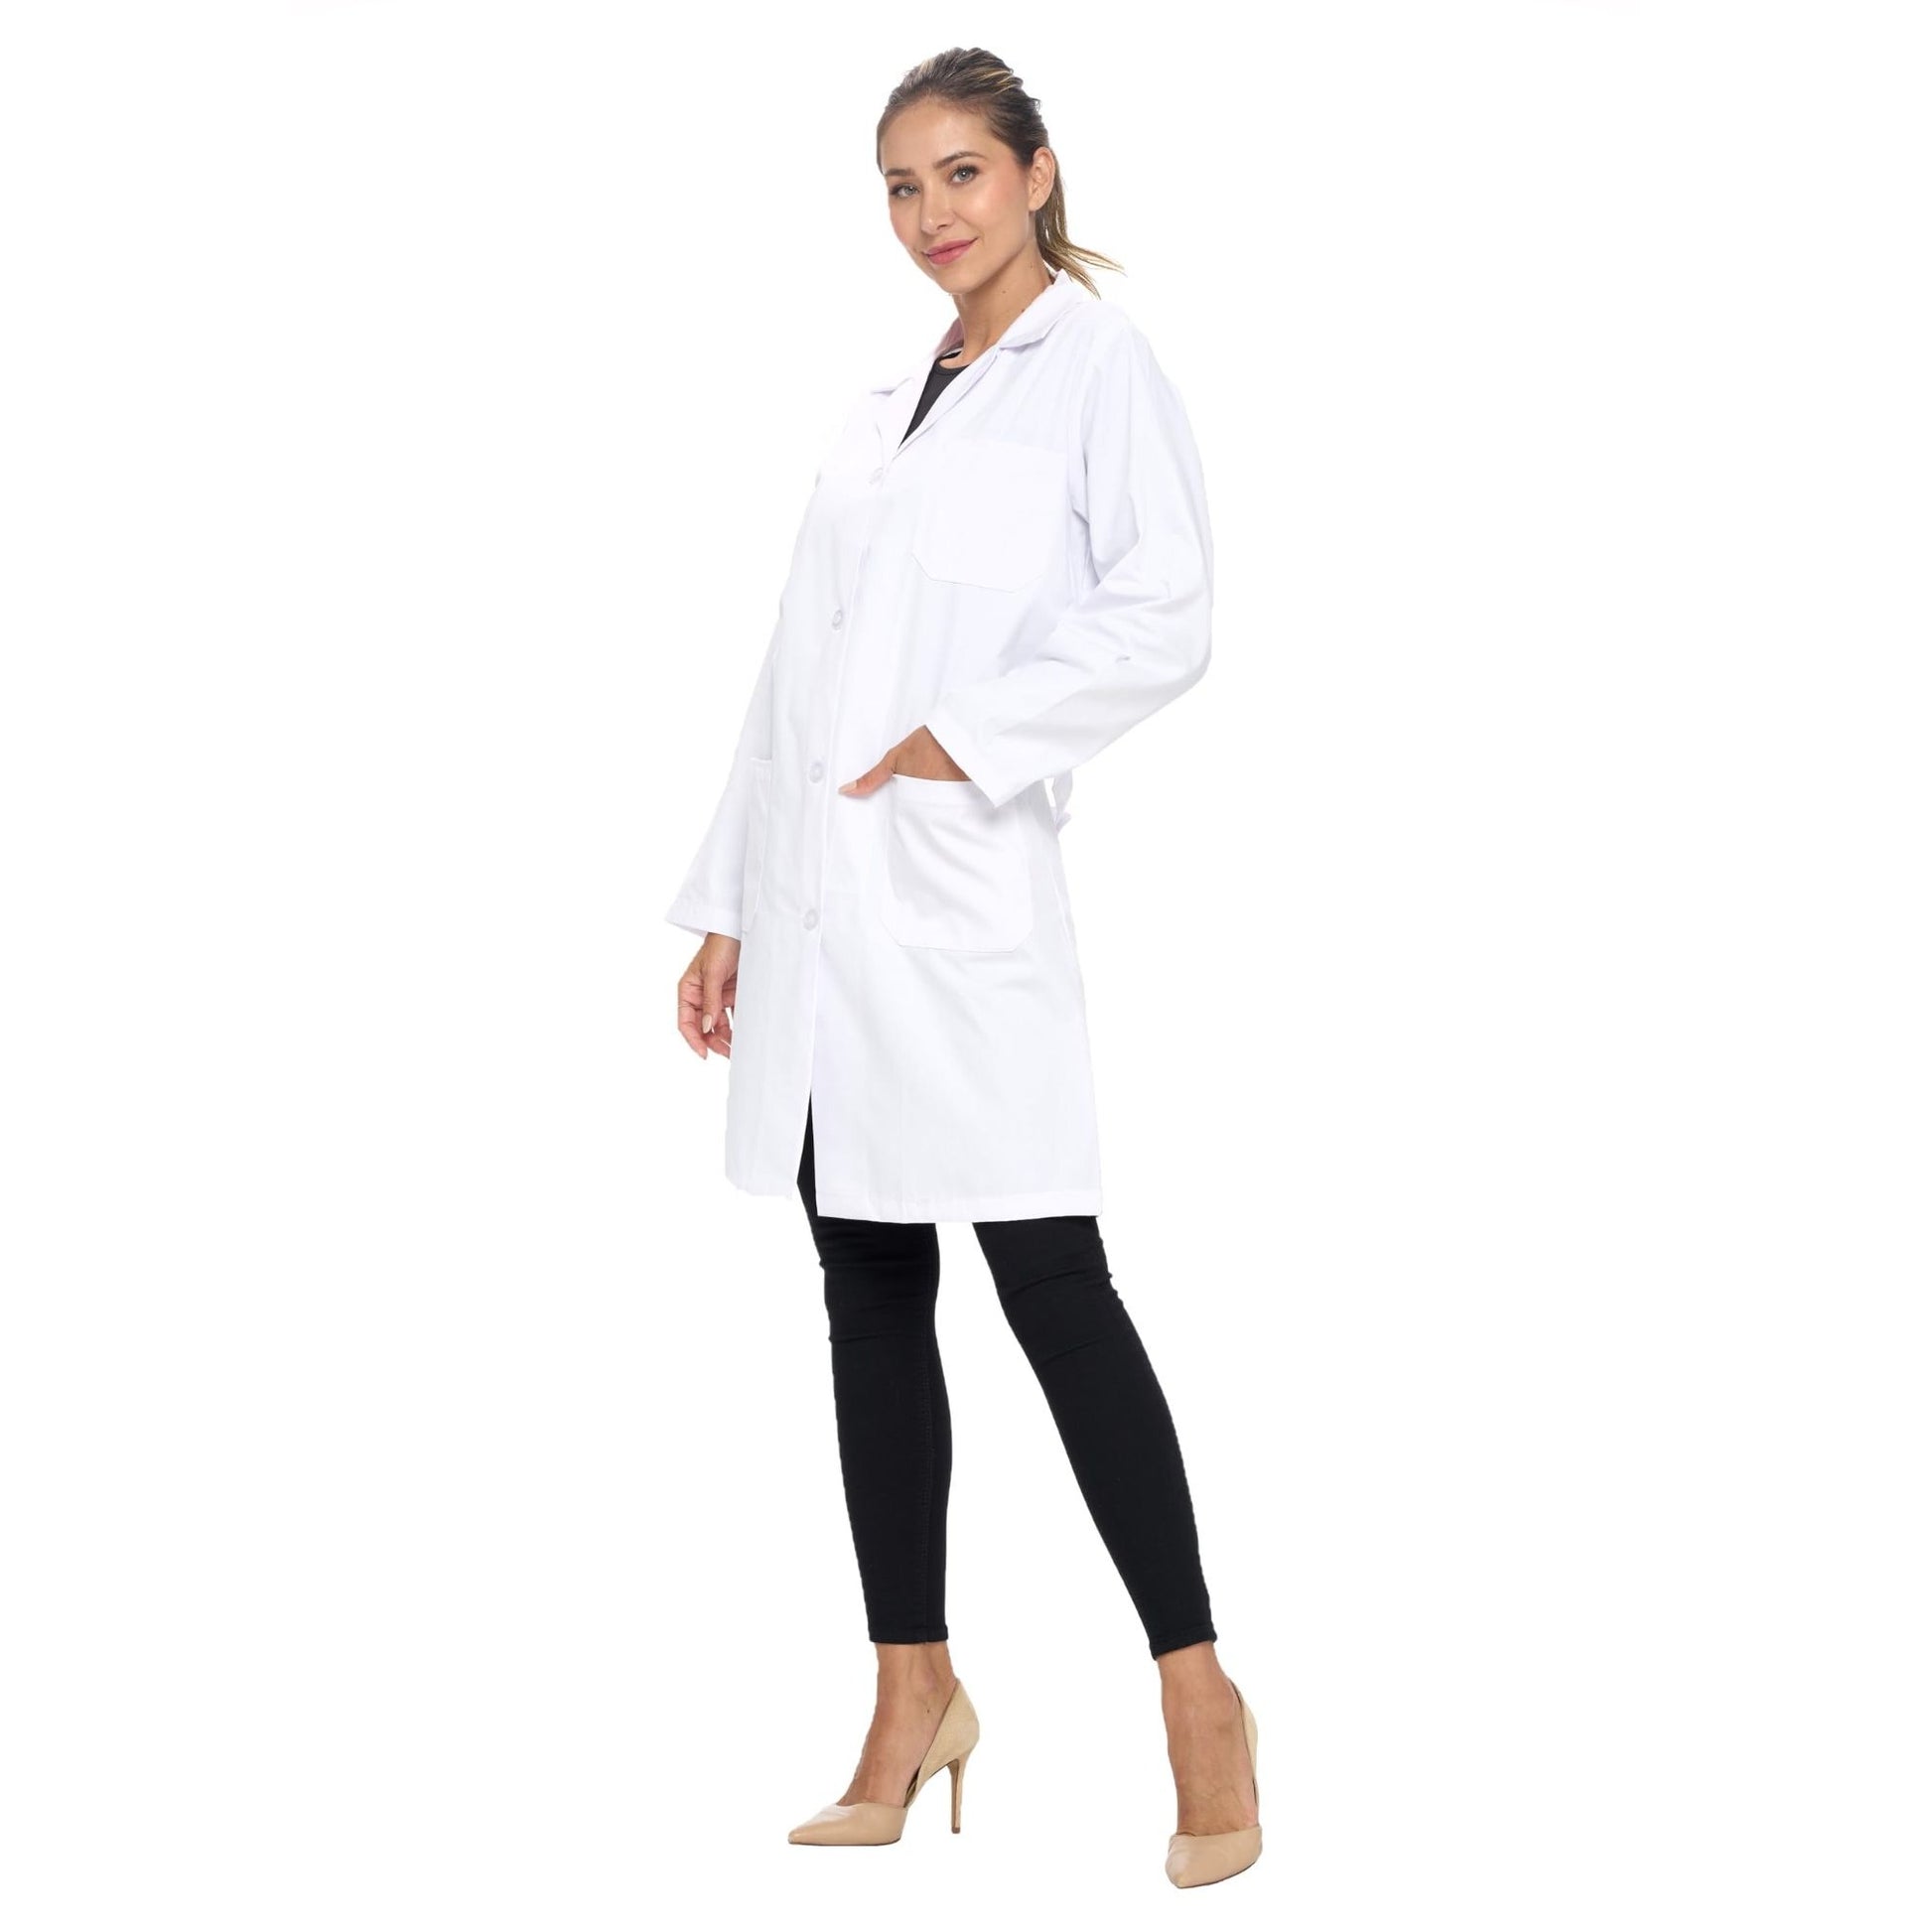 Women Lab Coats, Women Uniforms 